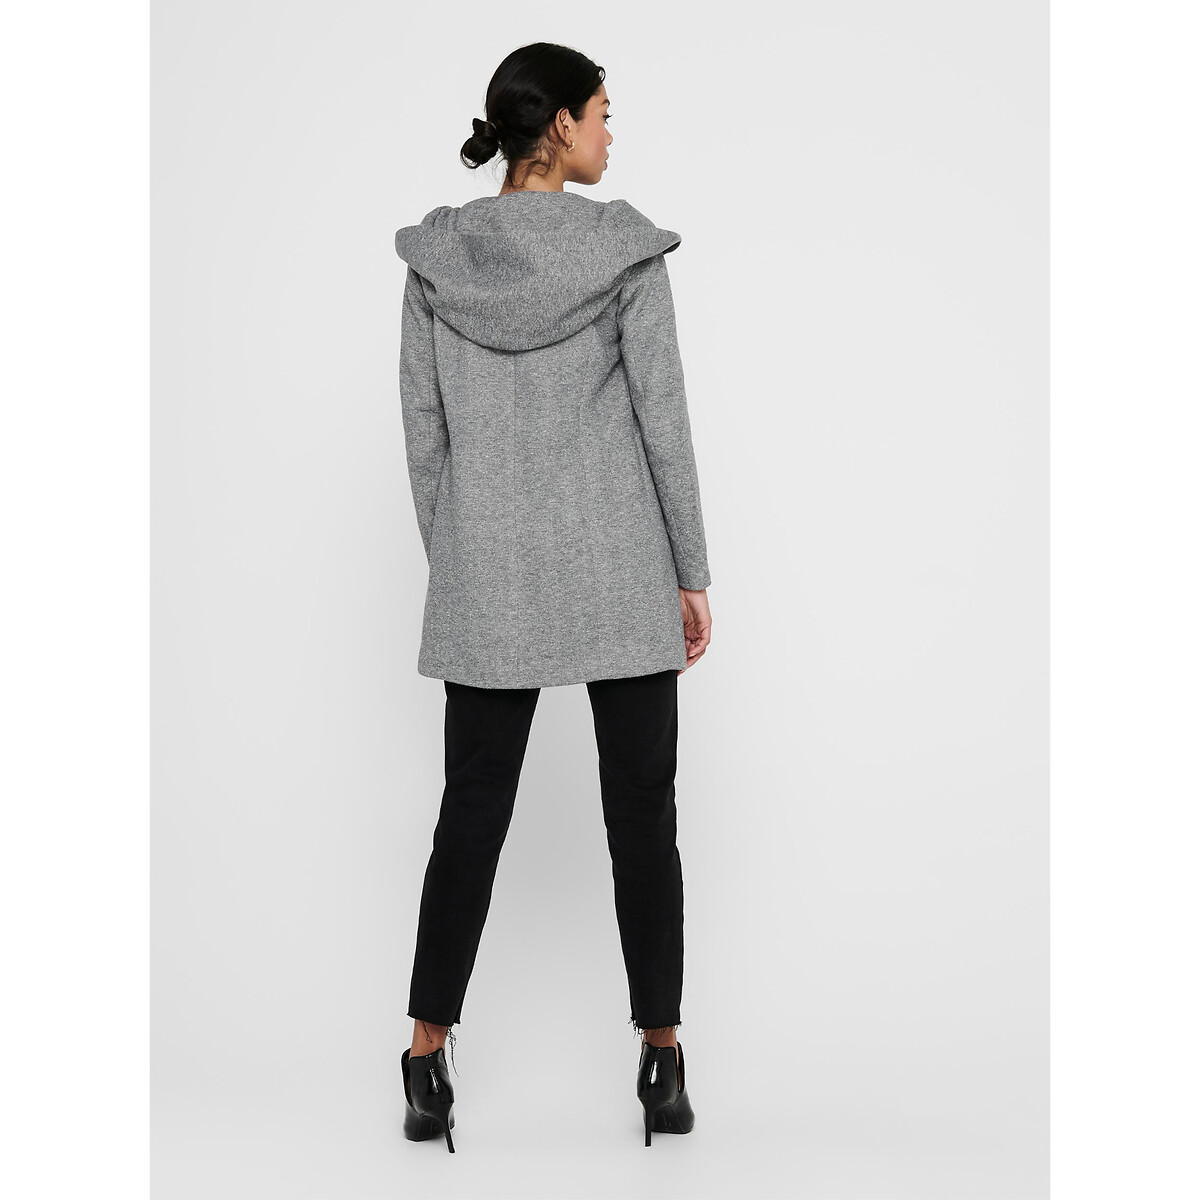 Пальто Тонкое с капюшоном из бархатистого материала XL серый LaRedoute, размер XL - фото 3